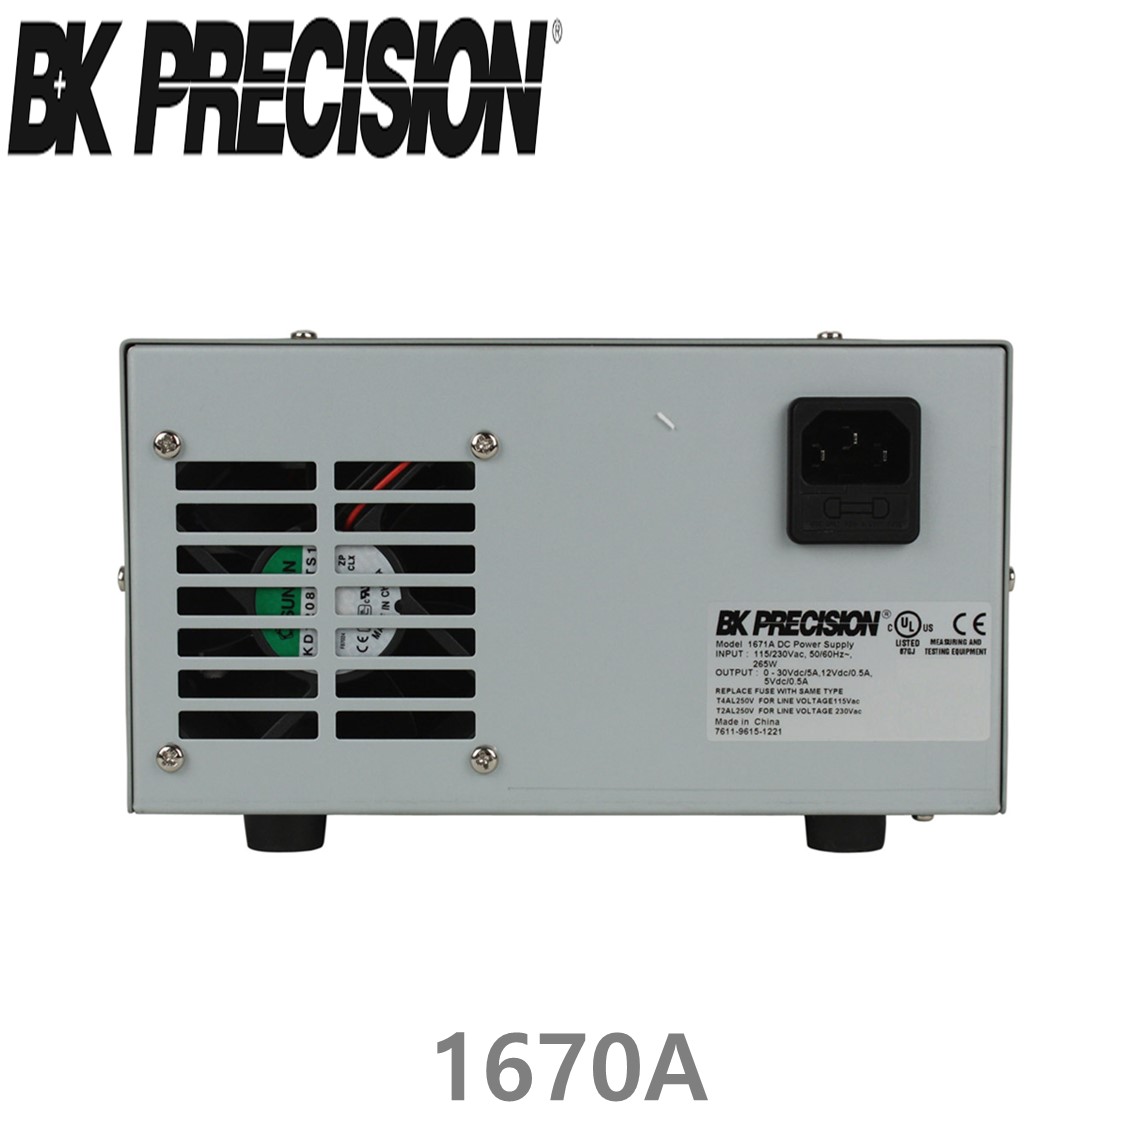 [ BK PRECISION ] BK 1670A, 30V/3A(가변), 12V/0.5A(고정), 5V/0.5V(고정), Triple OutputDC Power Supply, 3채널 DC 전원공급기, B&K 1670A